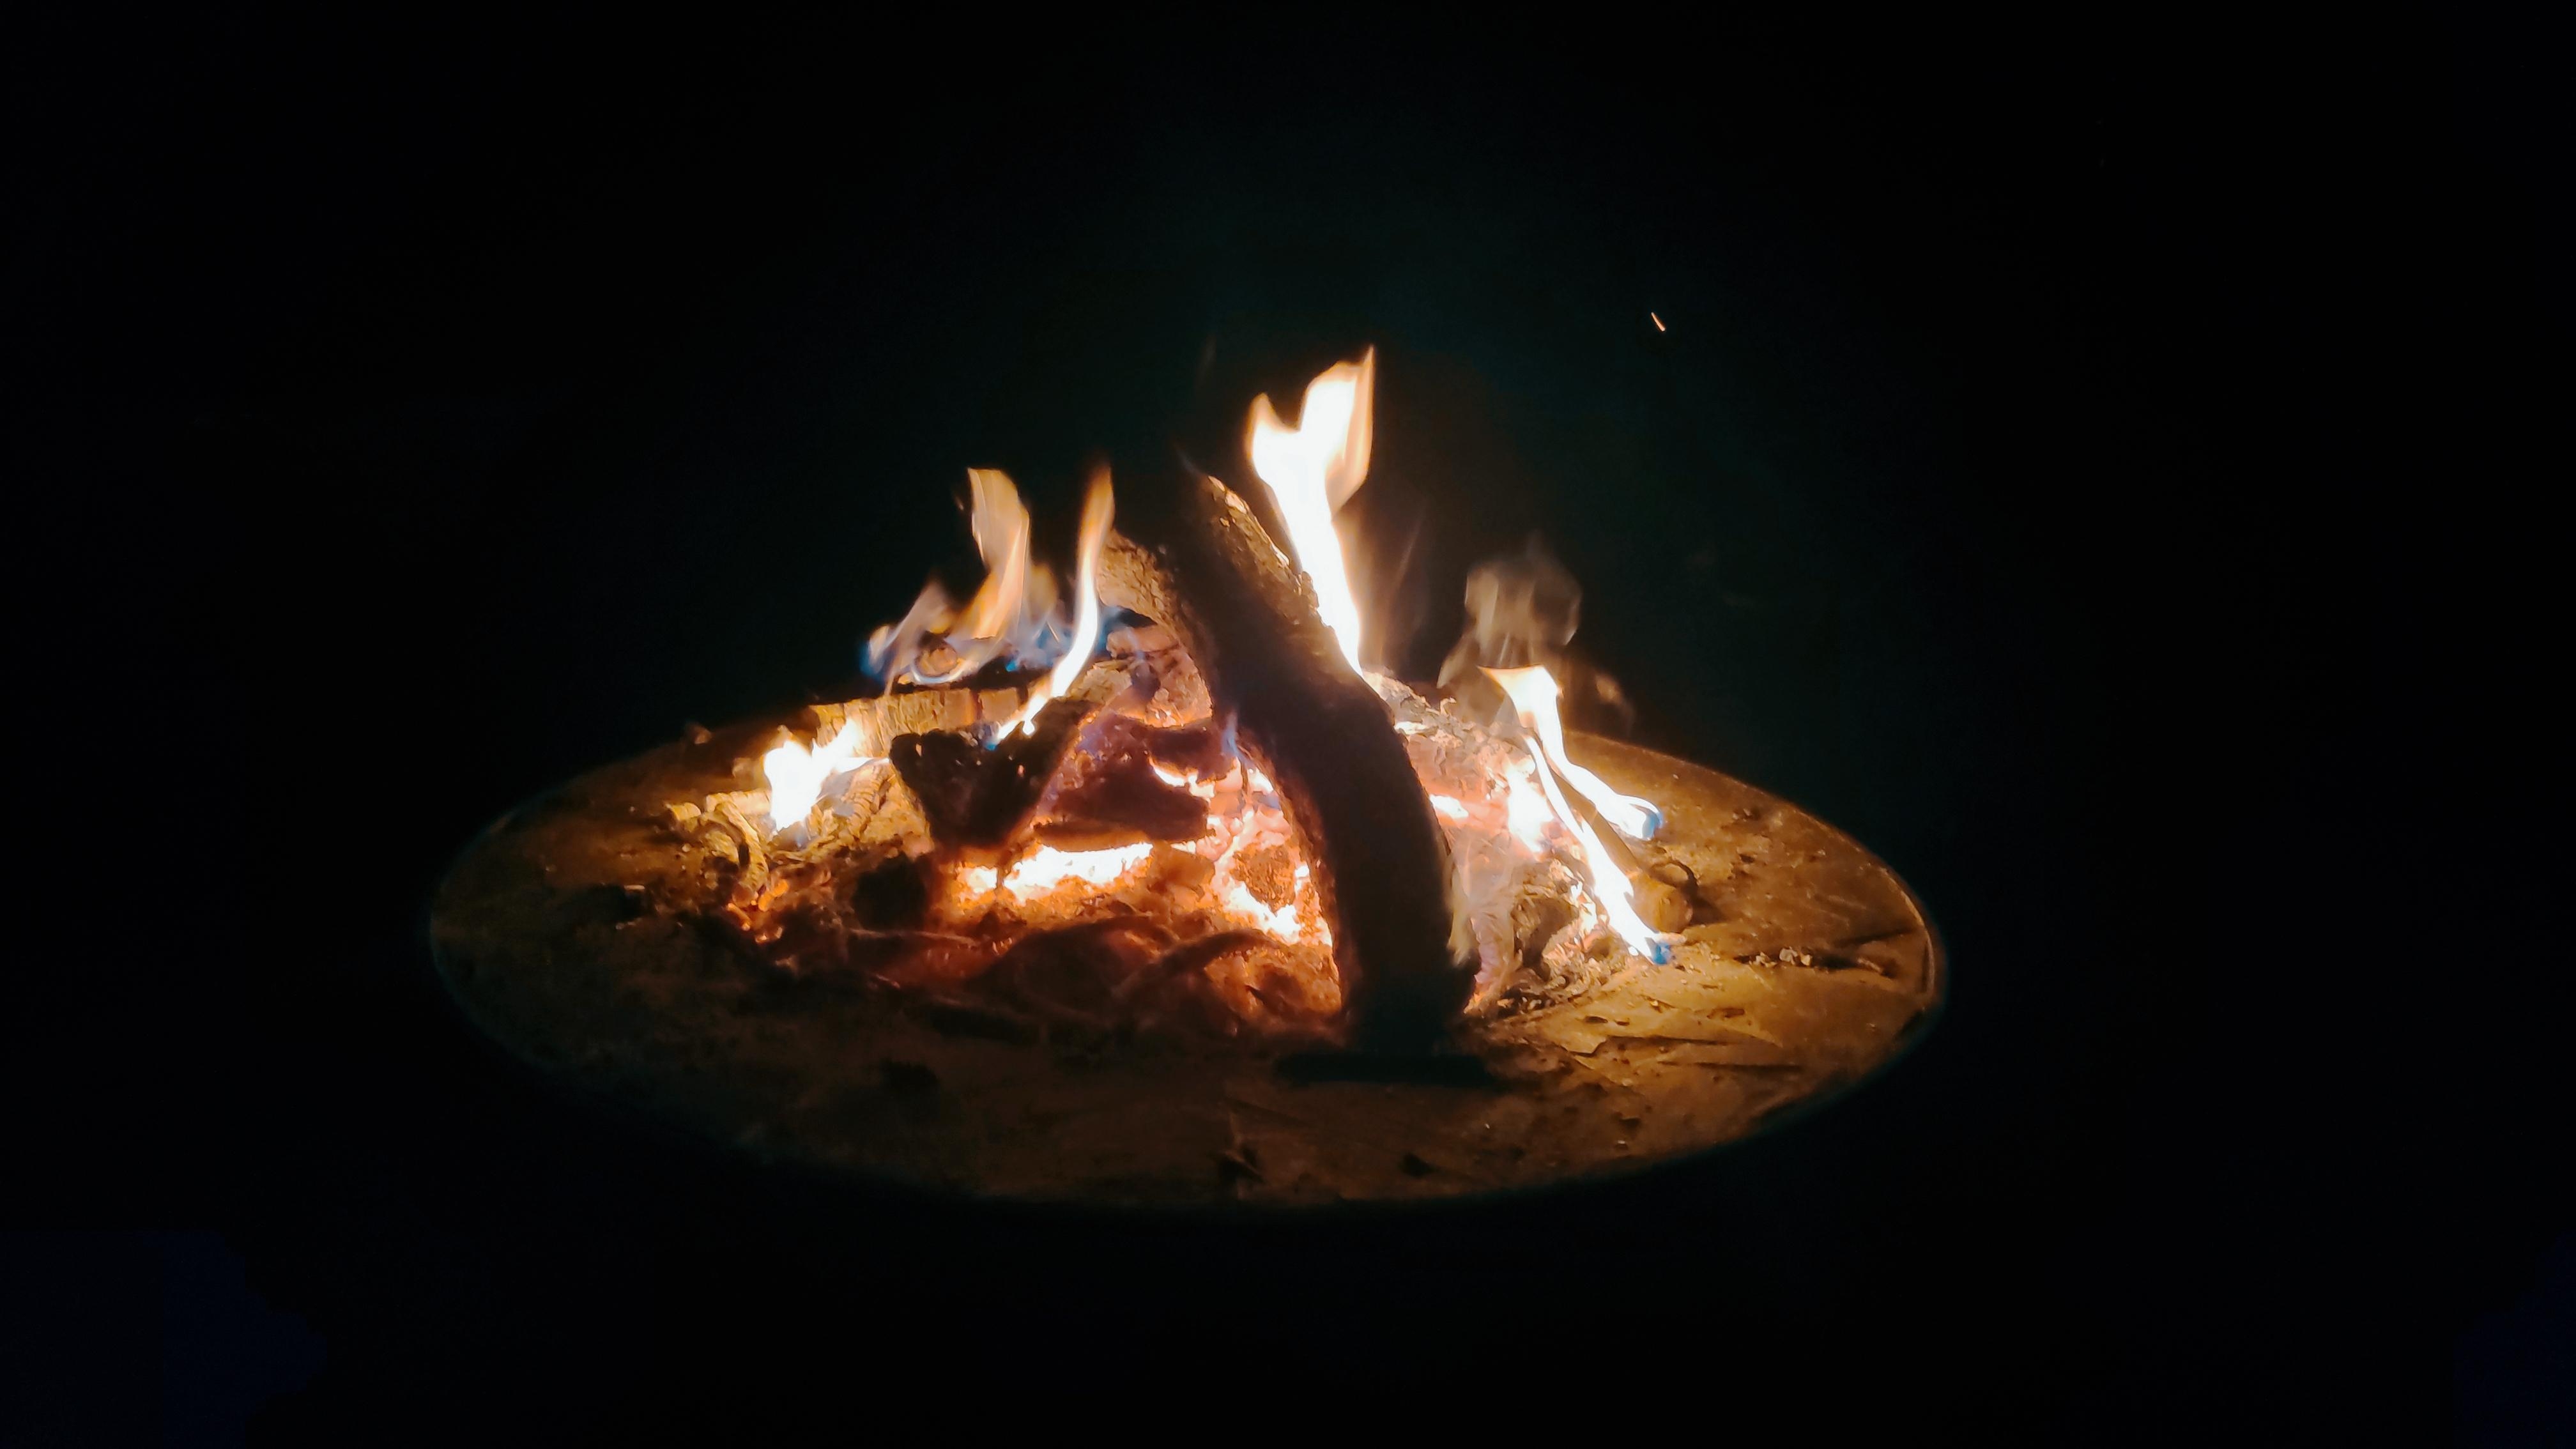 .Feuer.
#Feuer #Feuerschale #zusammenkommen #Abend #Urlaub #Gartenparty #Ursprung